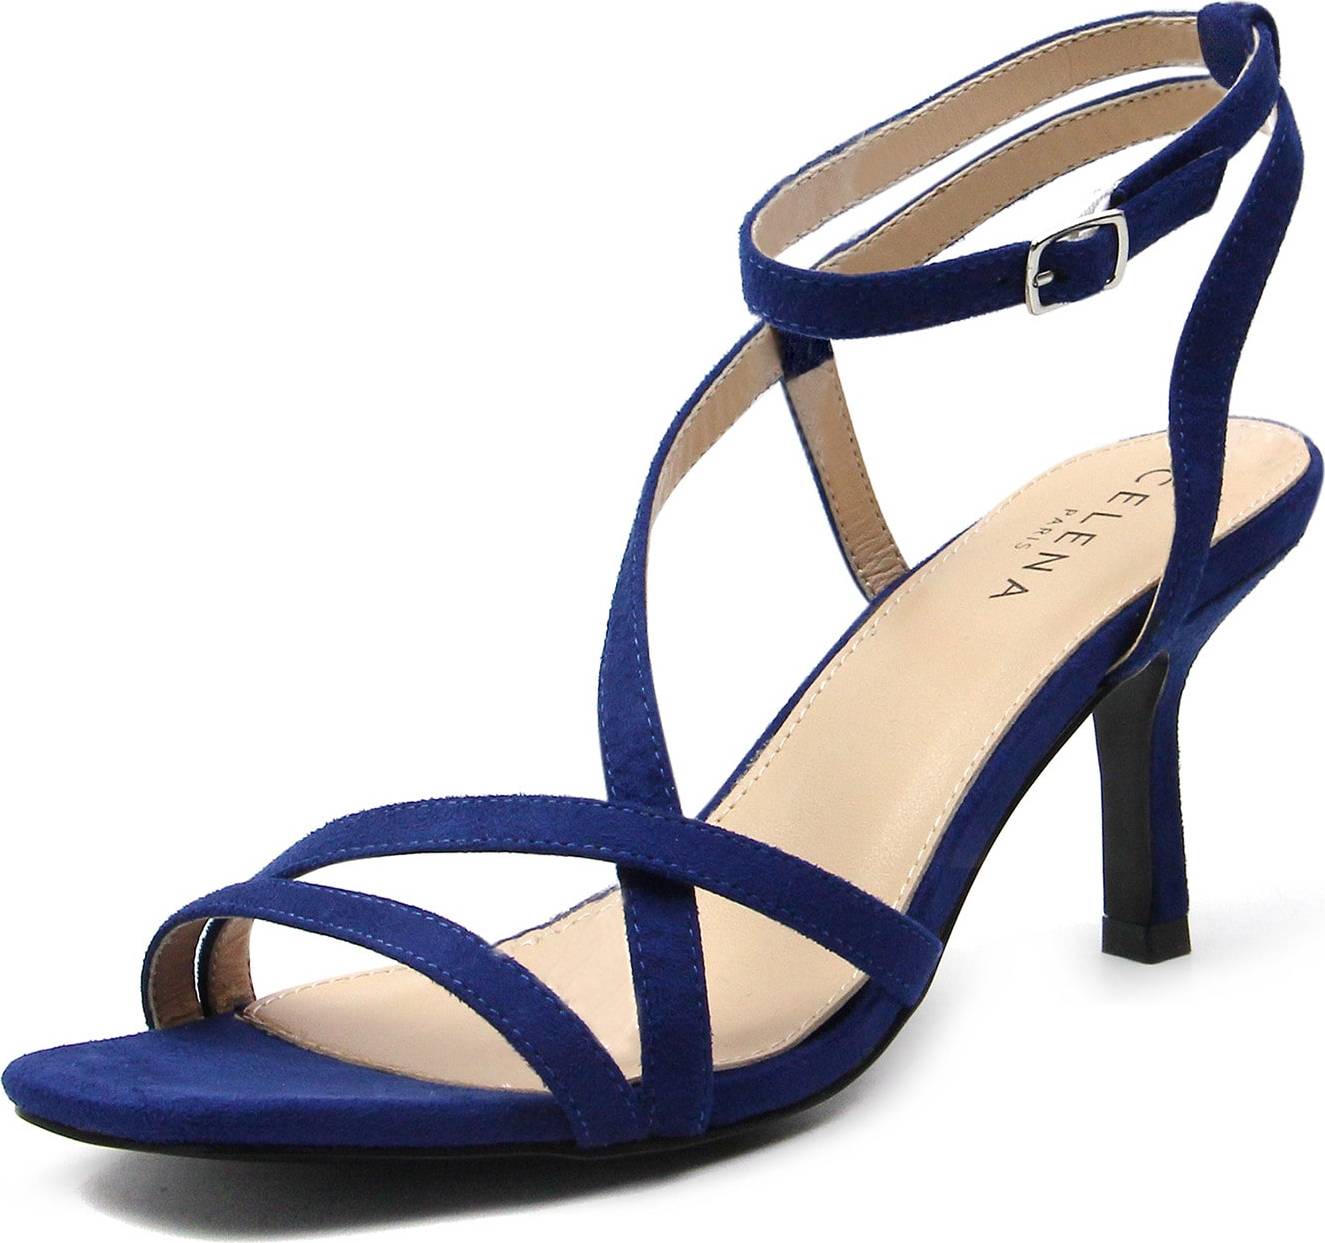 Celena Páskové sandály 'Chia' modrá